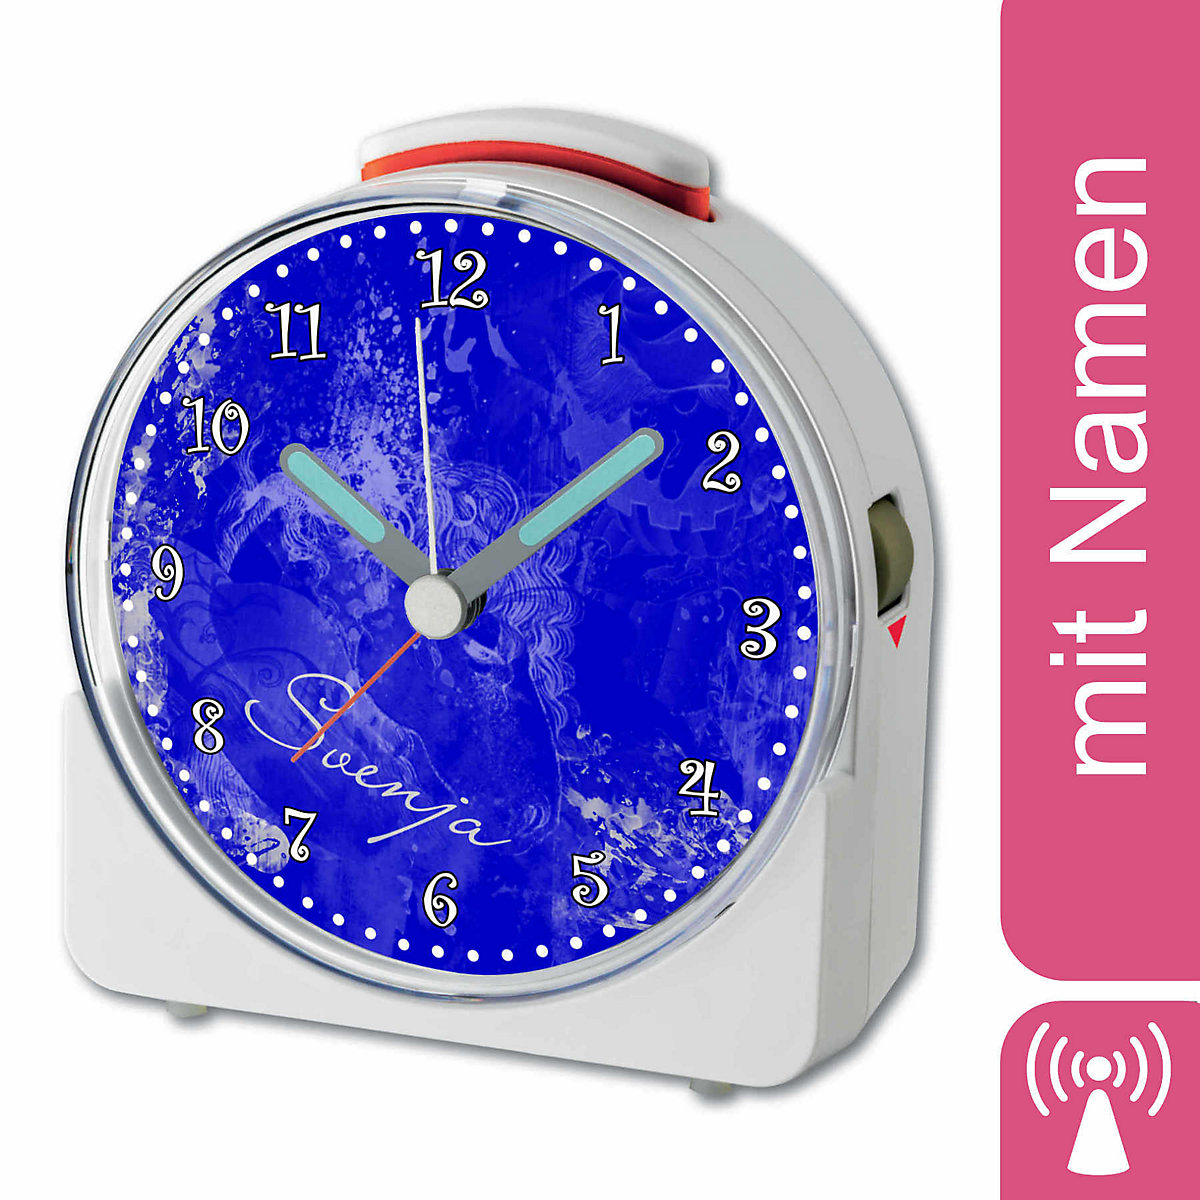 CreaDesign Kinder Funkwecker weiß personalisiert mit Namen Traum Blau 12-Stunden-Anzeigeformat Geräuschlos/Ohne Ticken Nachtlicht